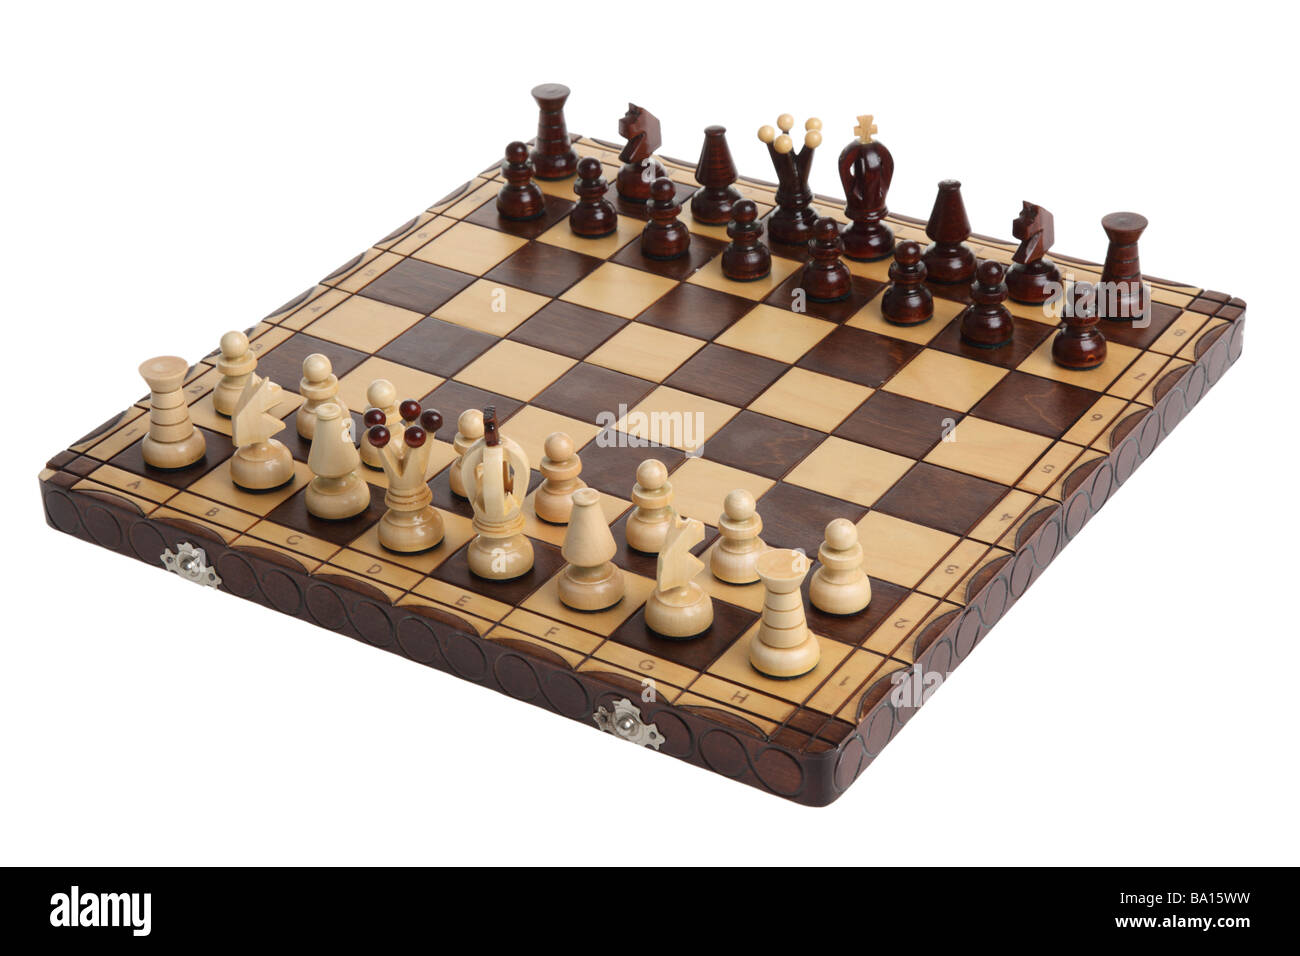 Schach an Bord Ausschnitt auf weißem Hintergrund Stockfoto